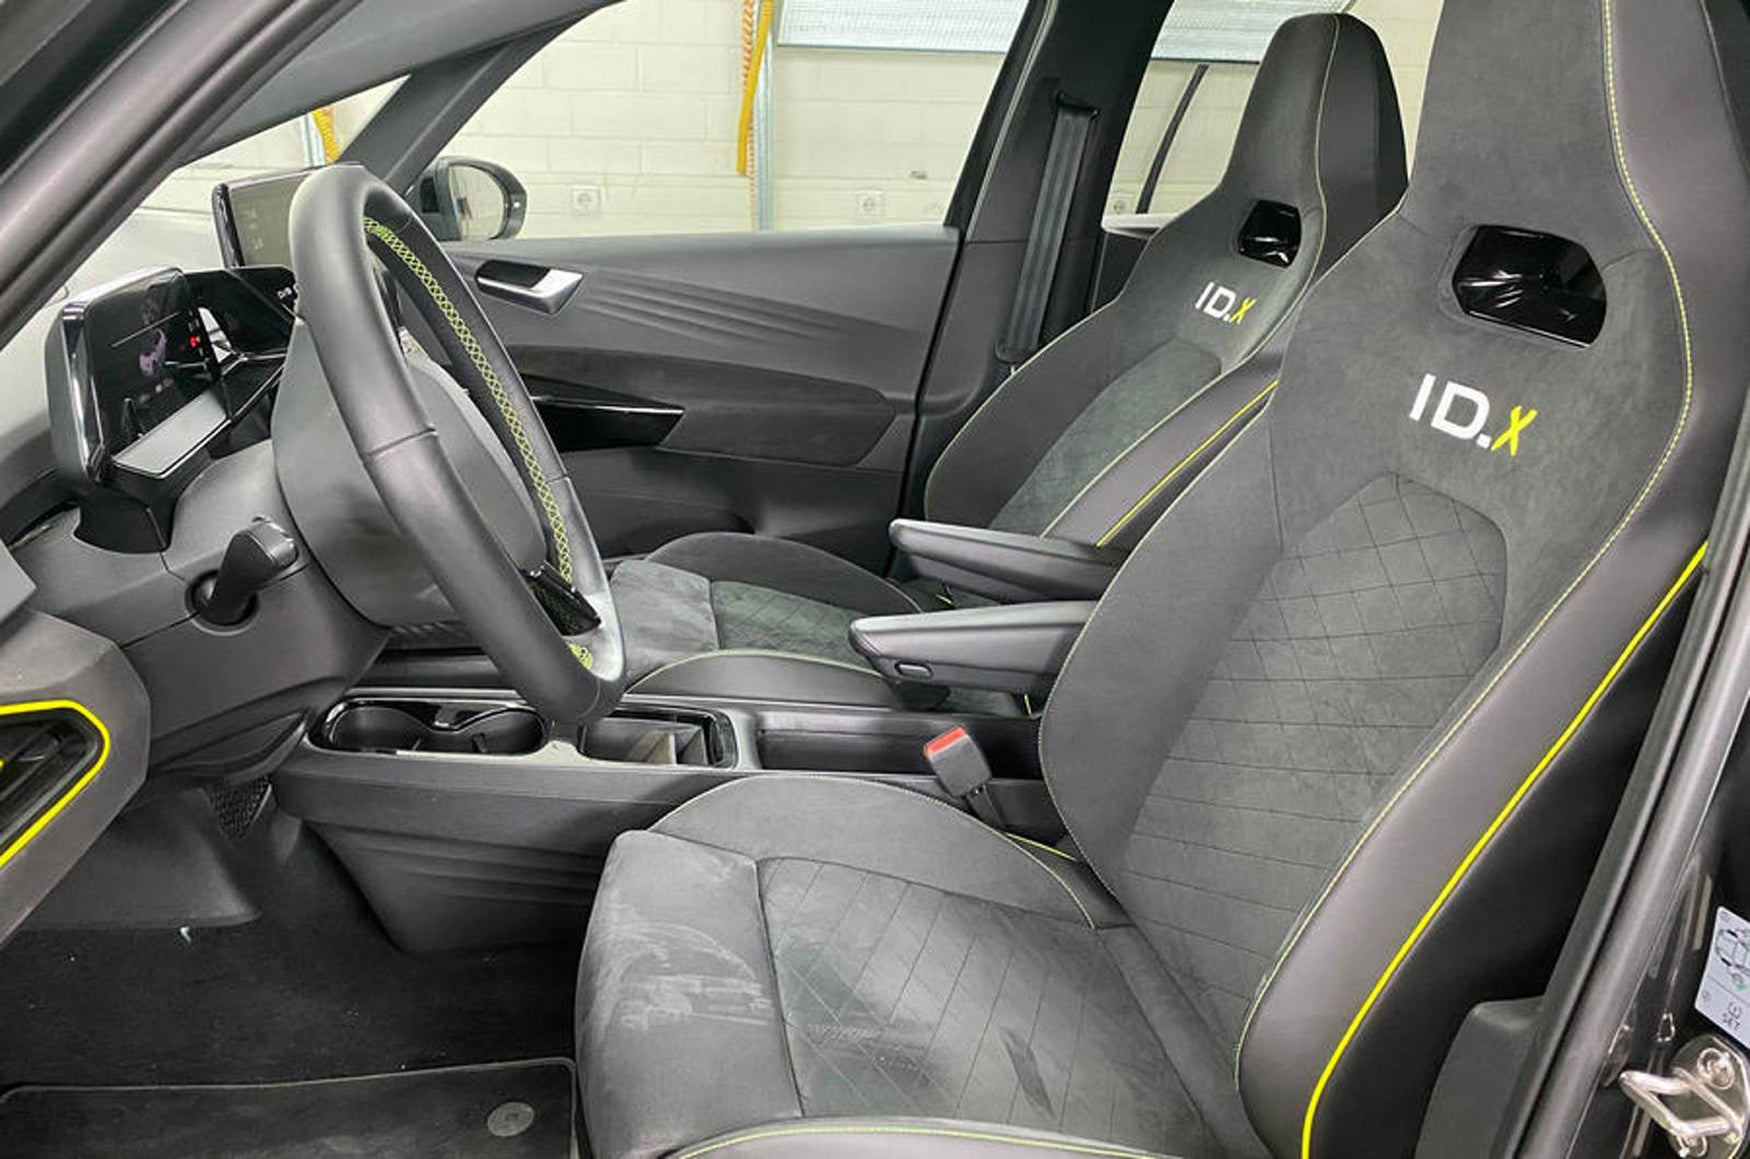 Volkswagen ID.X seats